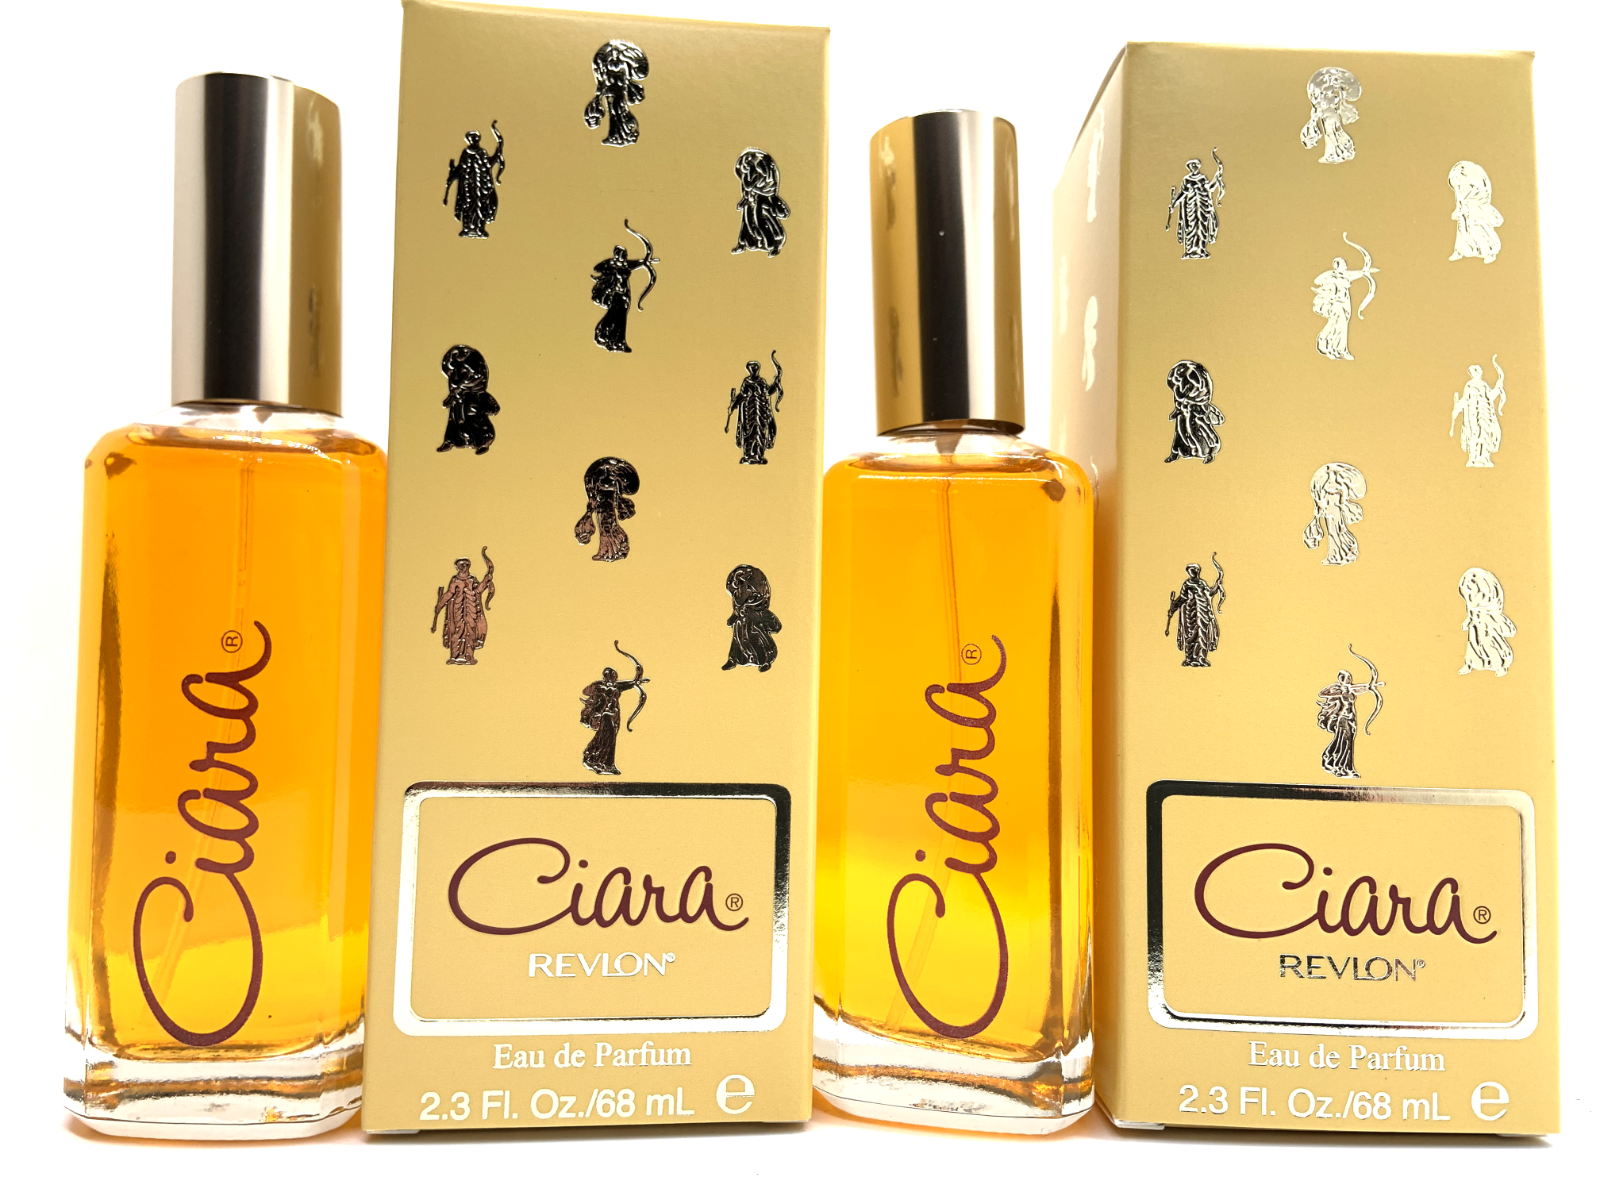 Lot of 2 Pc - Ciara by Revlon 100 St. 2.3 oz Eau de Parfum, Concentrated Perfume Revlon n/a - фотография #2